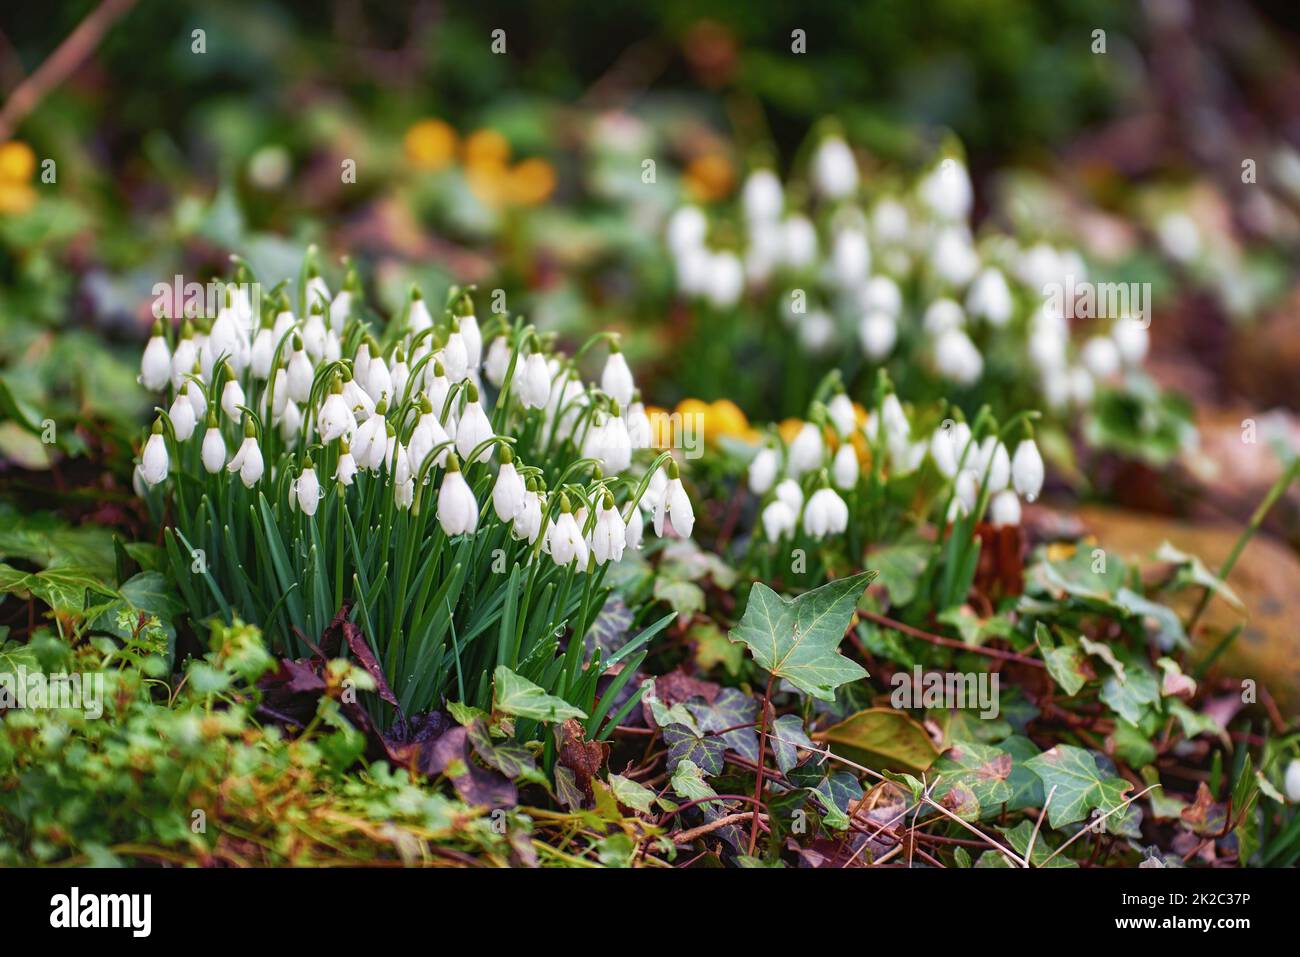 Galanthus nivalis wurde 1753 von dem schwedischen Botaniker Carl Linnaeus in seiner Art Plantarum beschrieben, und angesichts der spezifischen Epithet nivalis bedeutet dies verschneit (Galanthus bedeutet mit milchweißen Blüten). Dieser schmalblättrige Schneetropfen mit seinem zarten weißen h Stockfoto